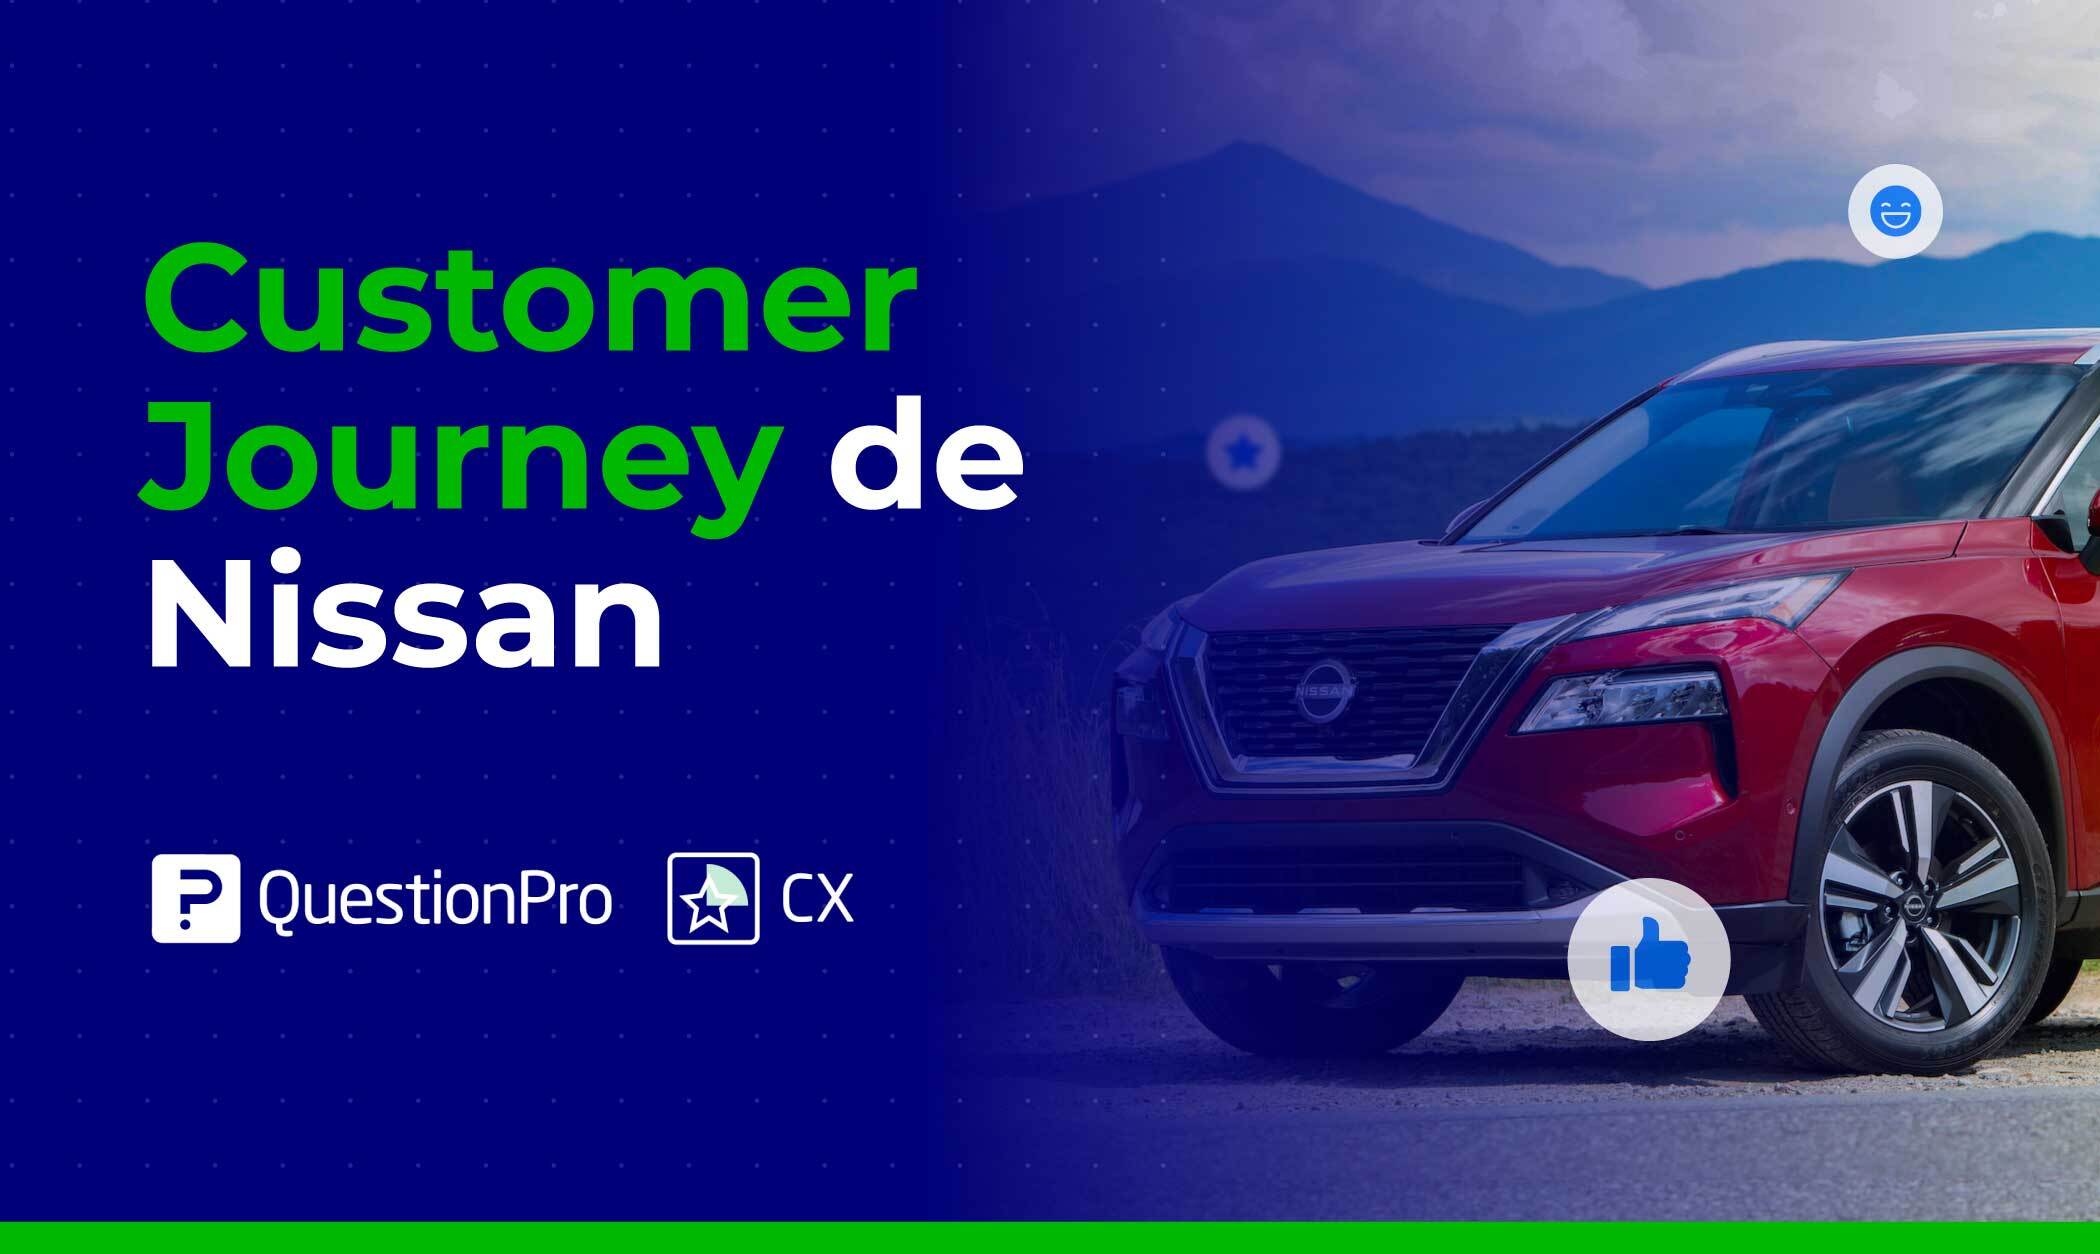 Customer journey de Nissan